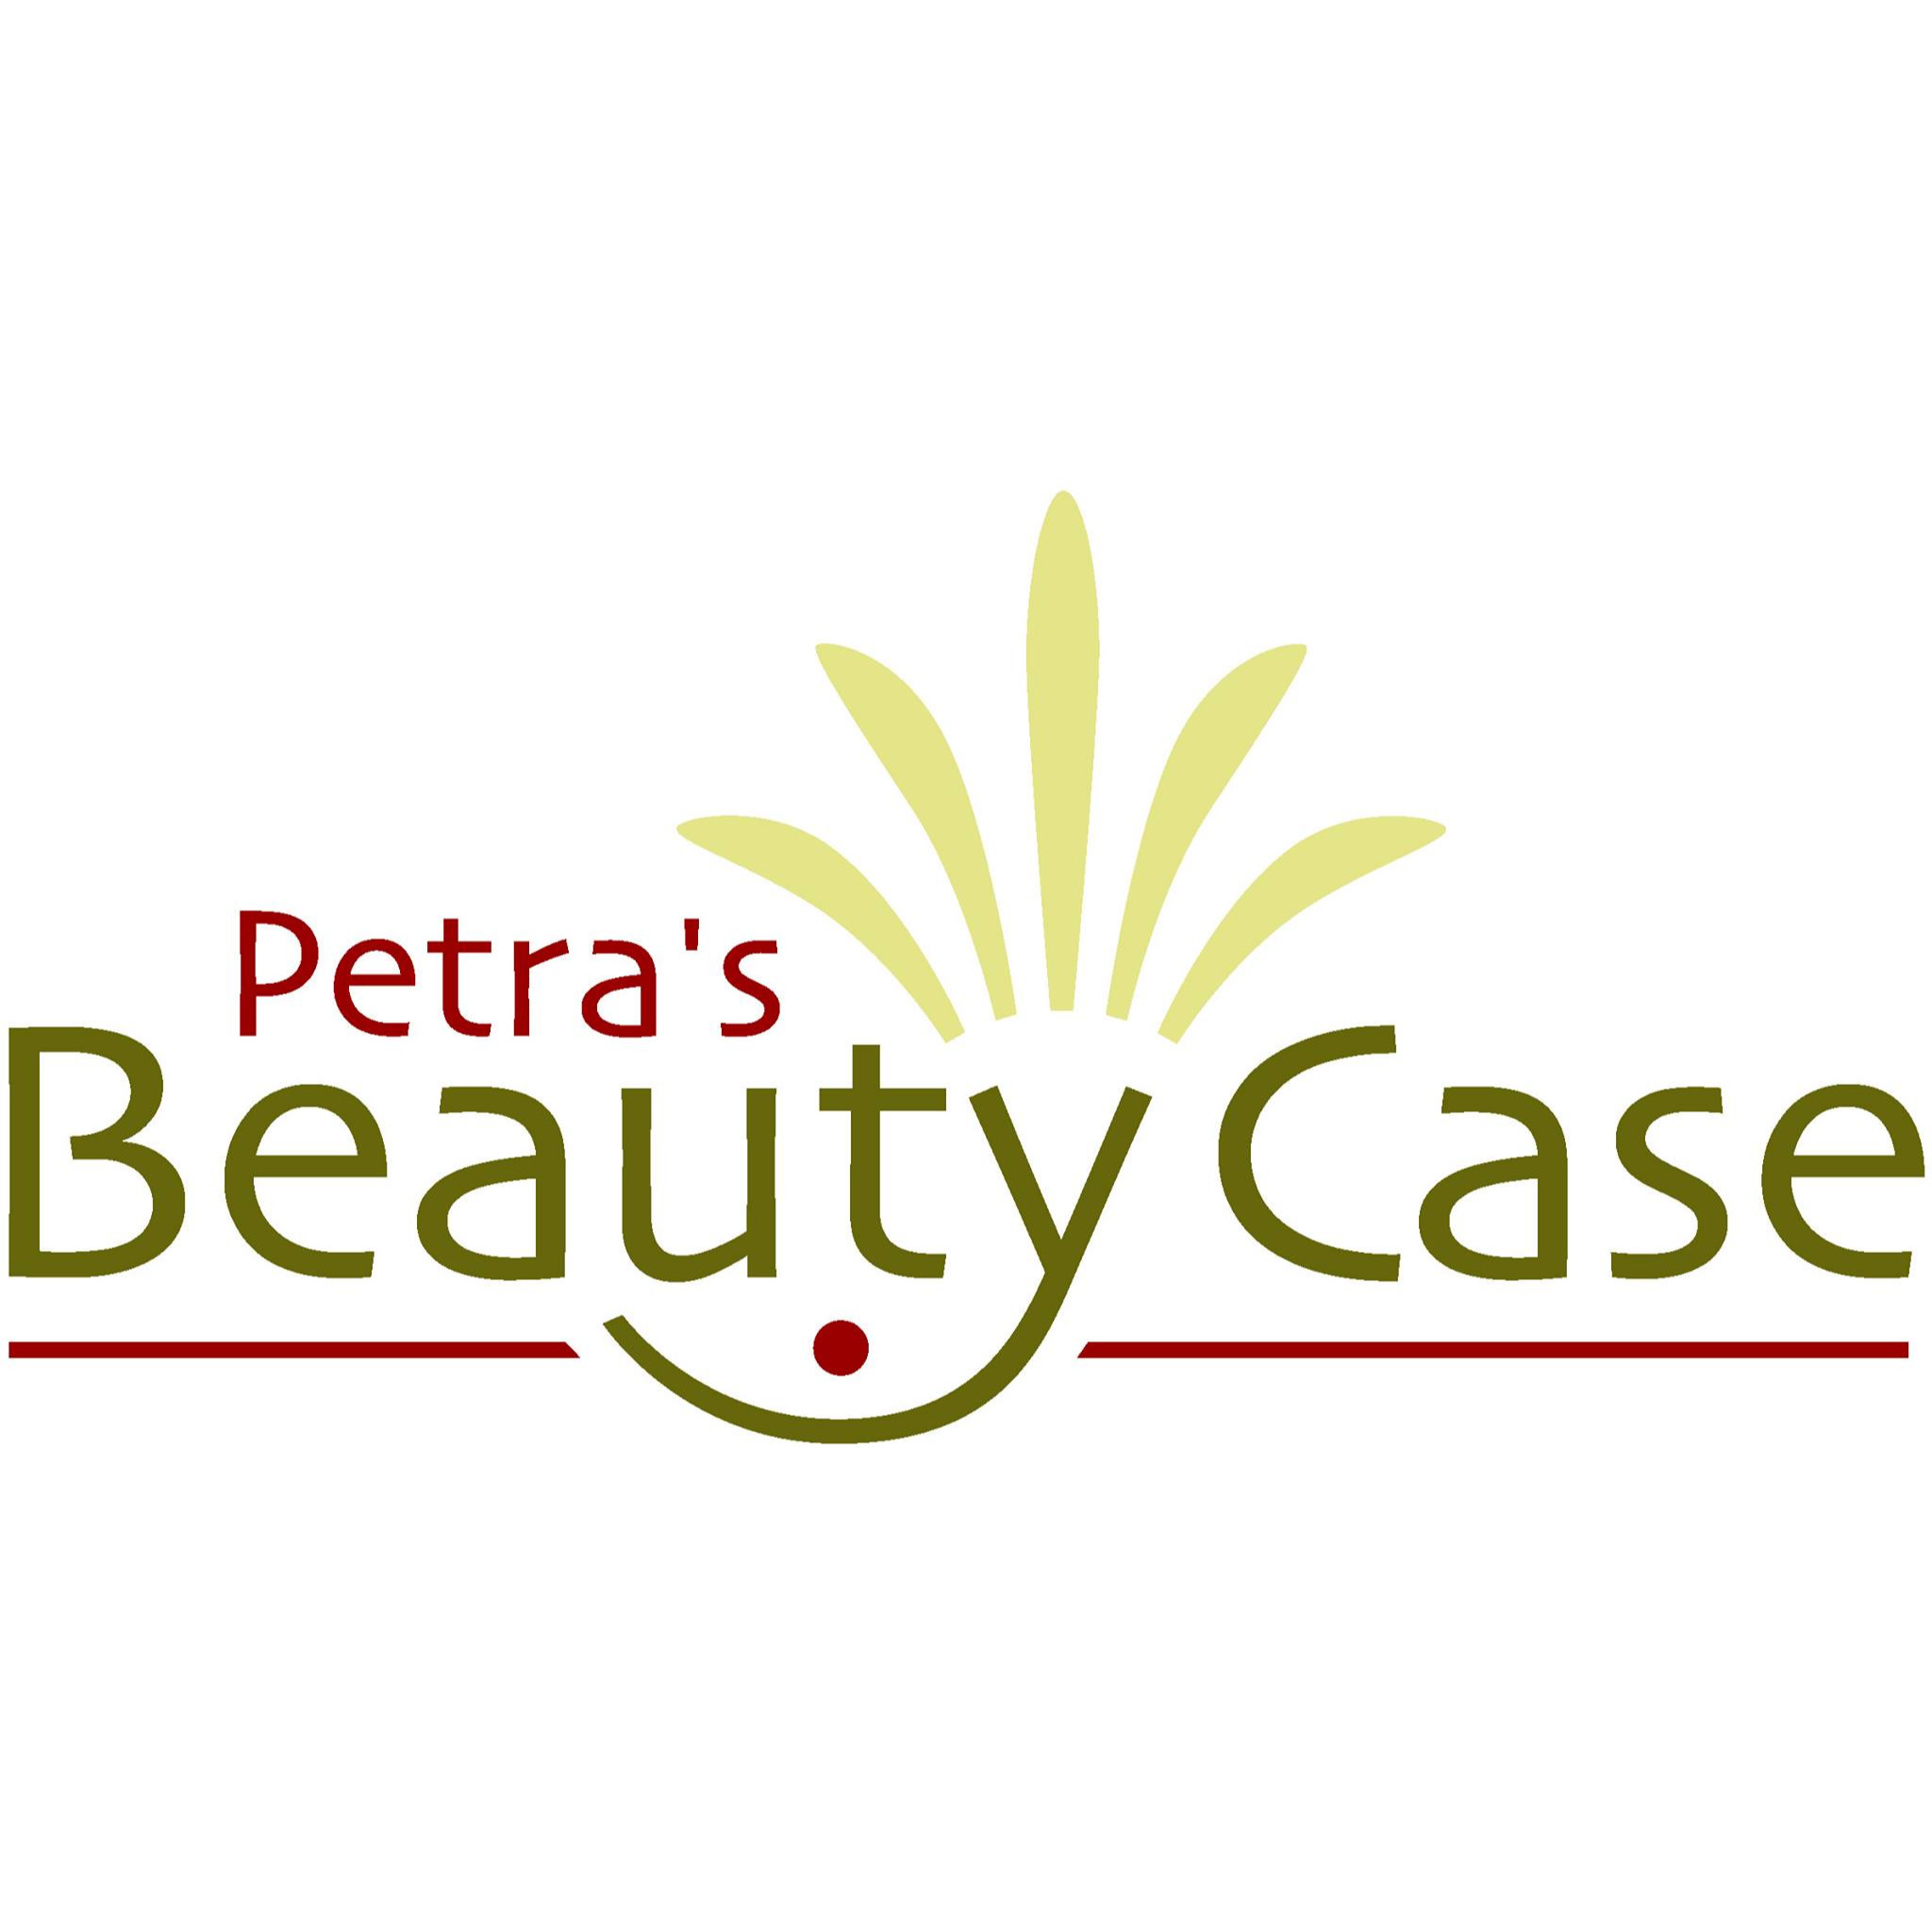 Petra's Beauty Case - Inh. Petra Sick